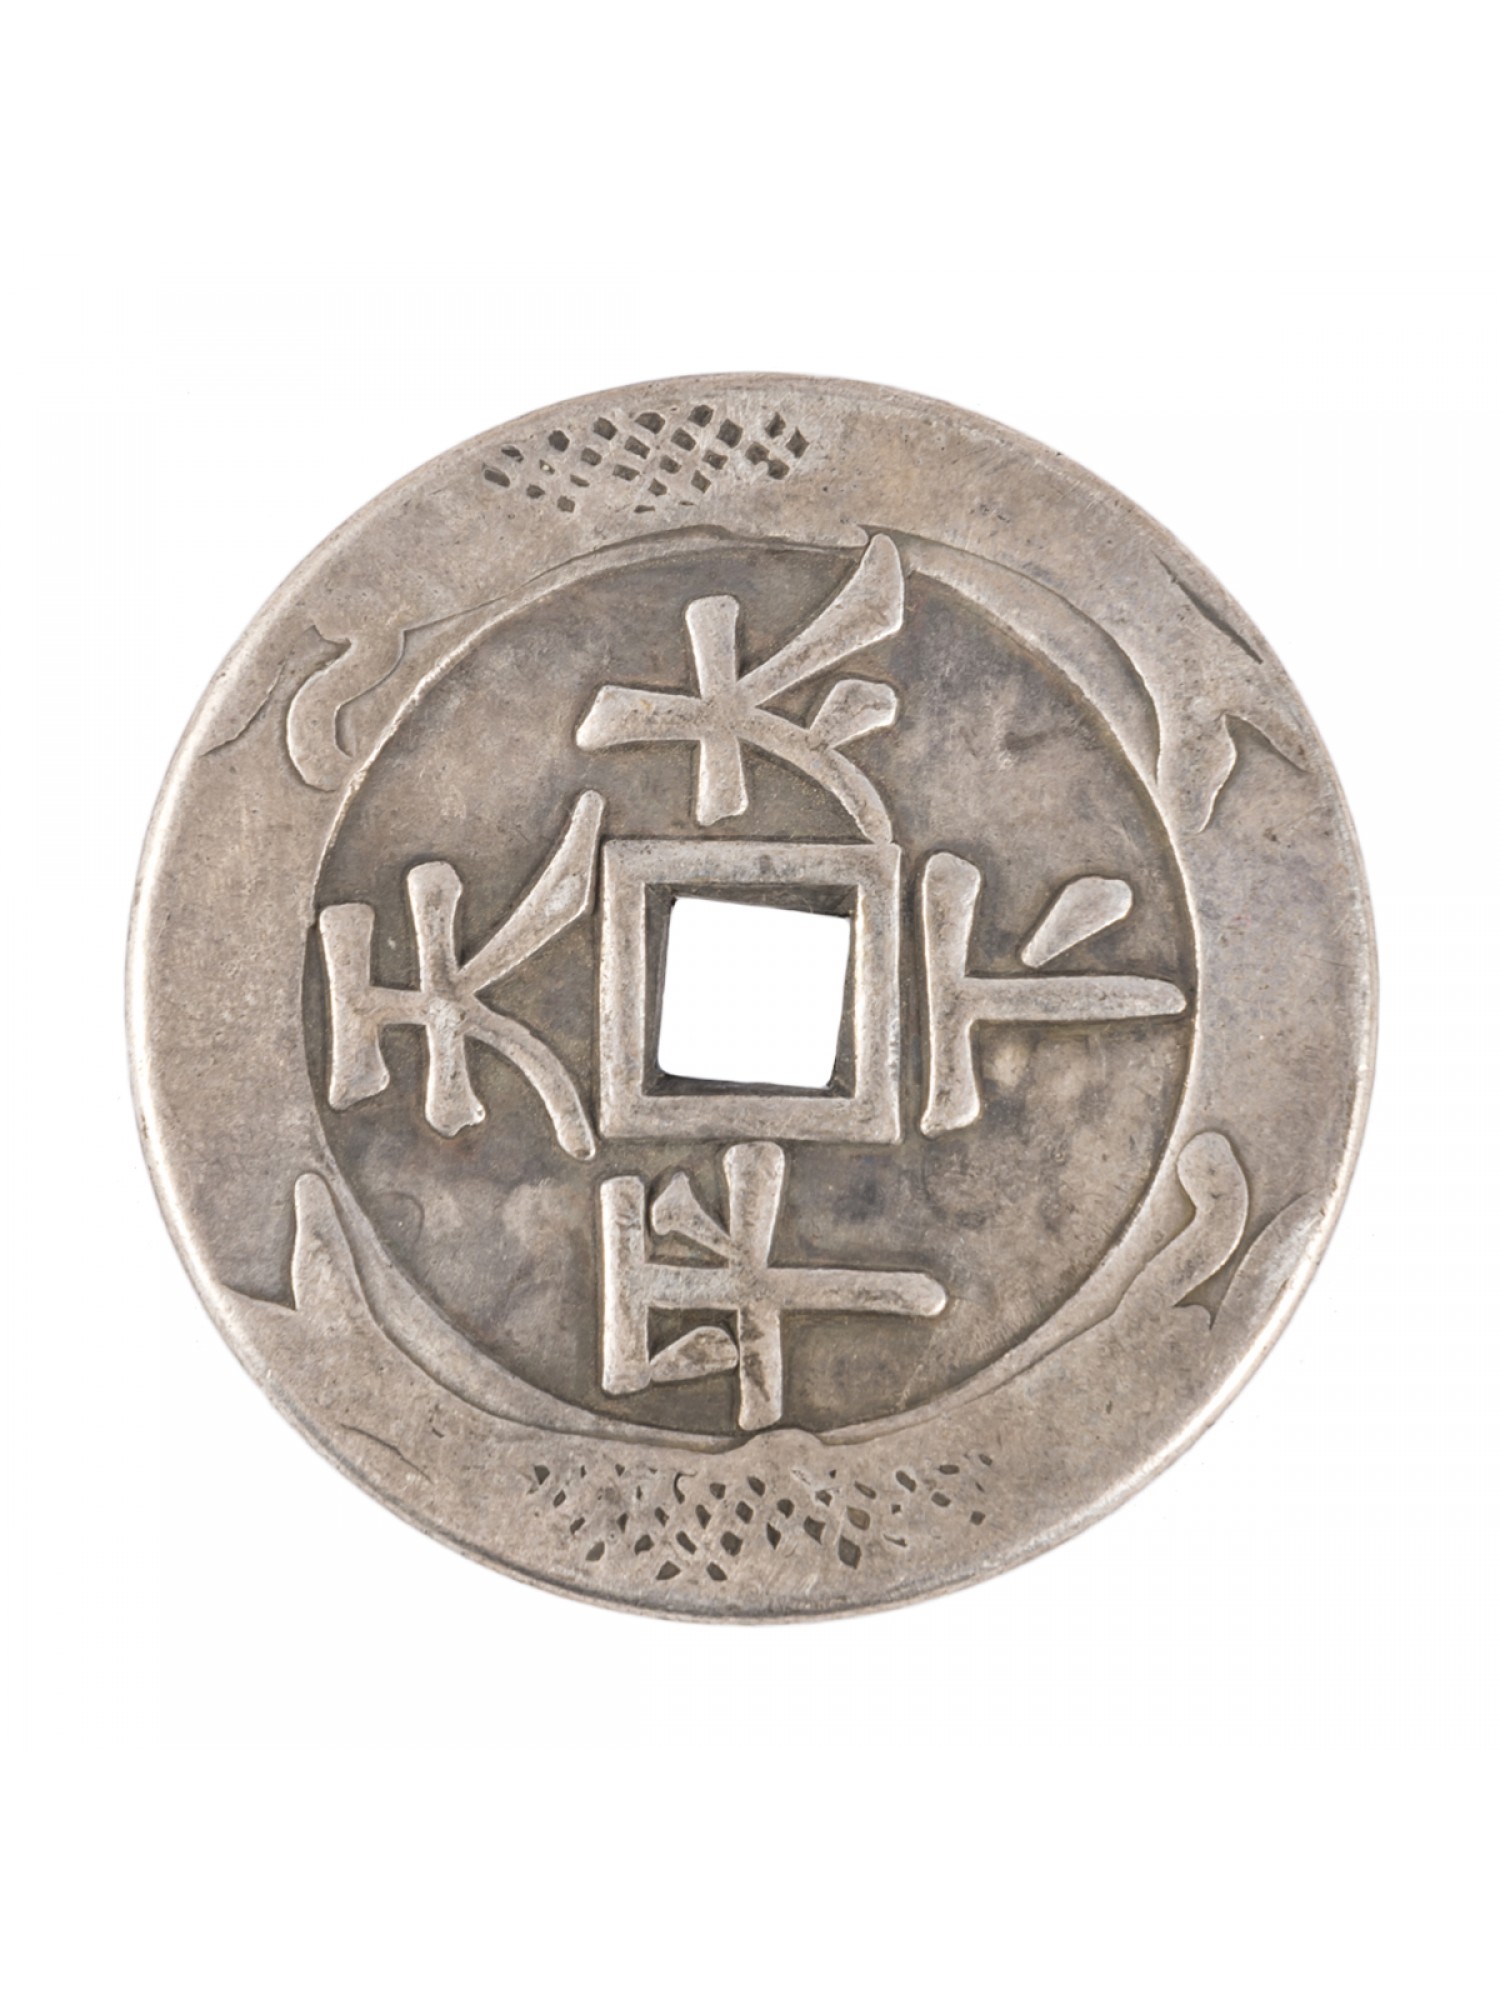 Монета из связки 10 монет со знаком богатством и равновесие, большая